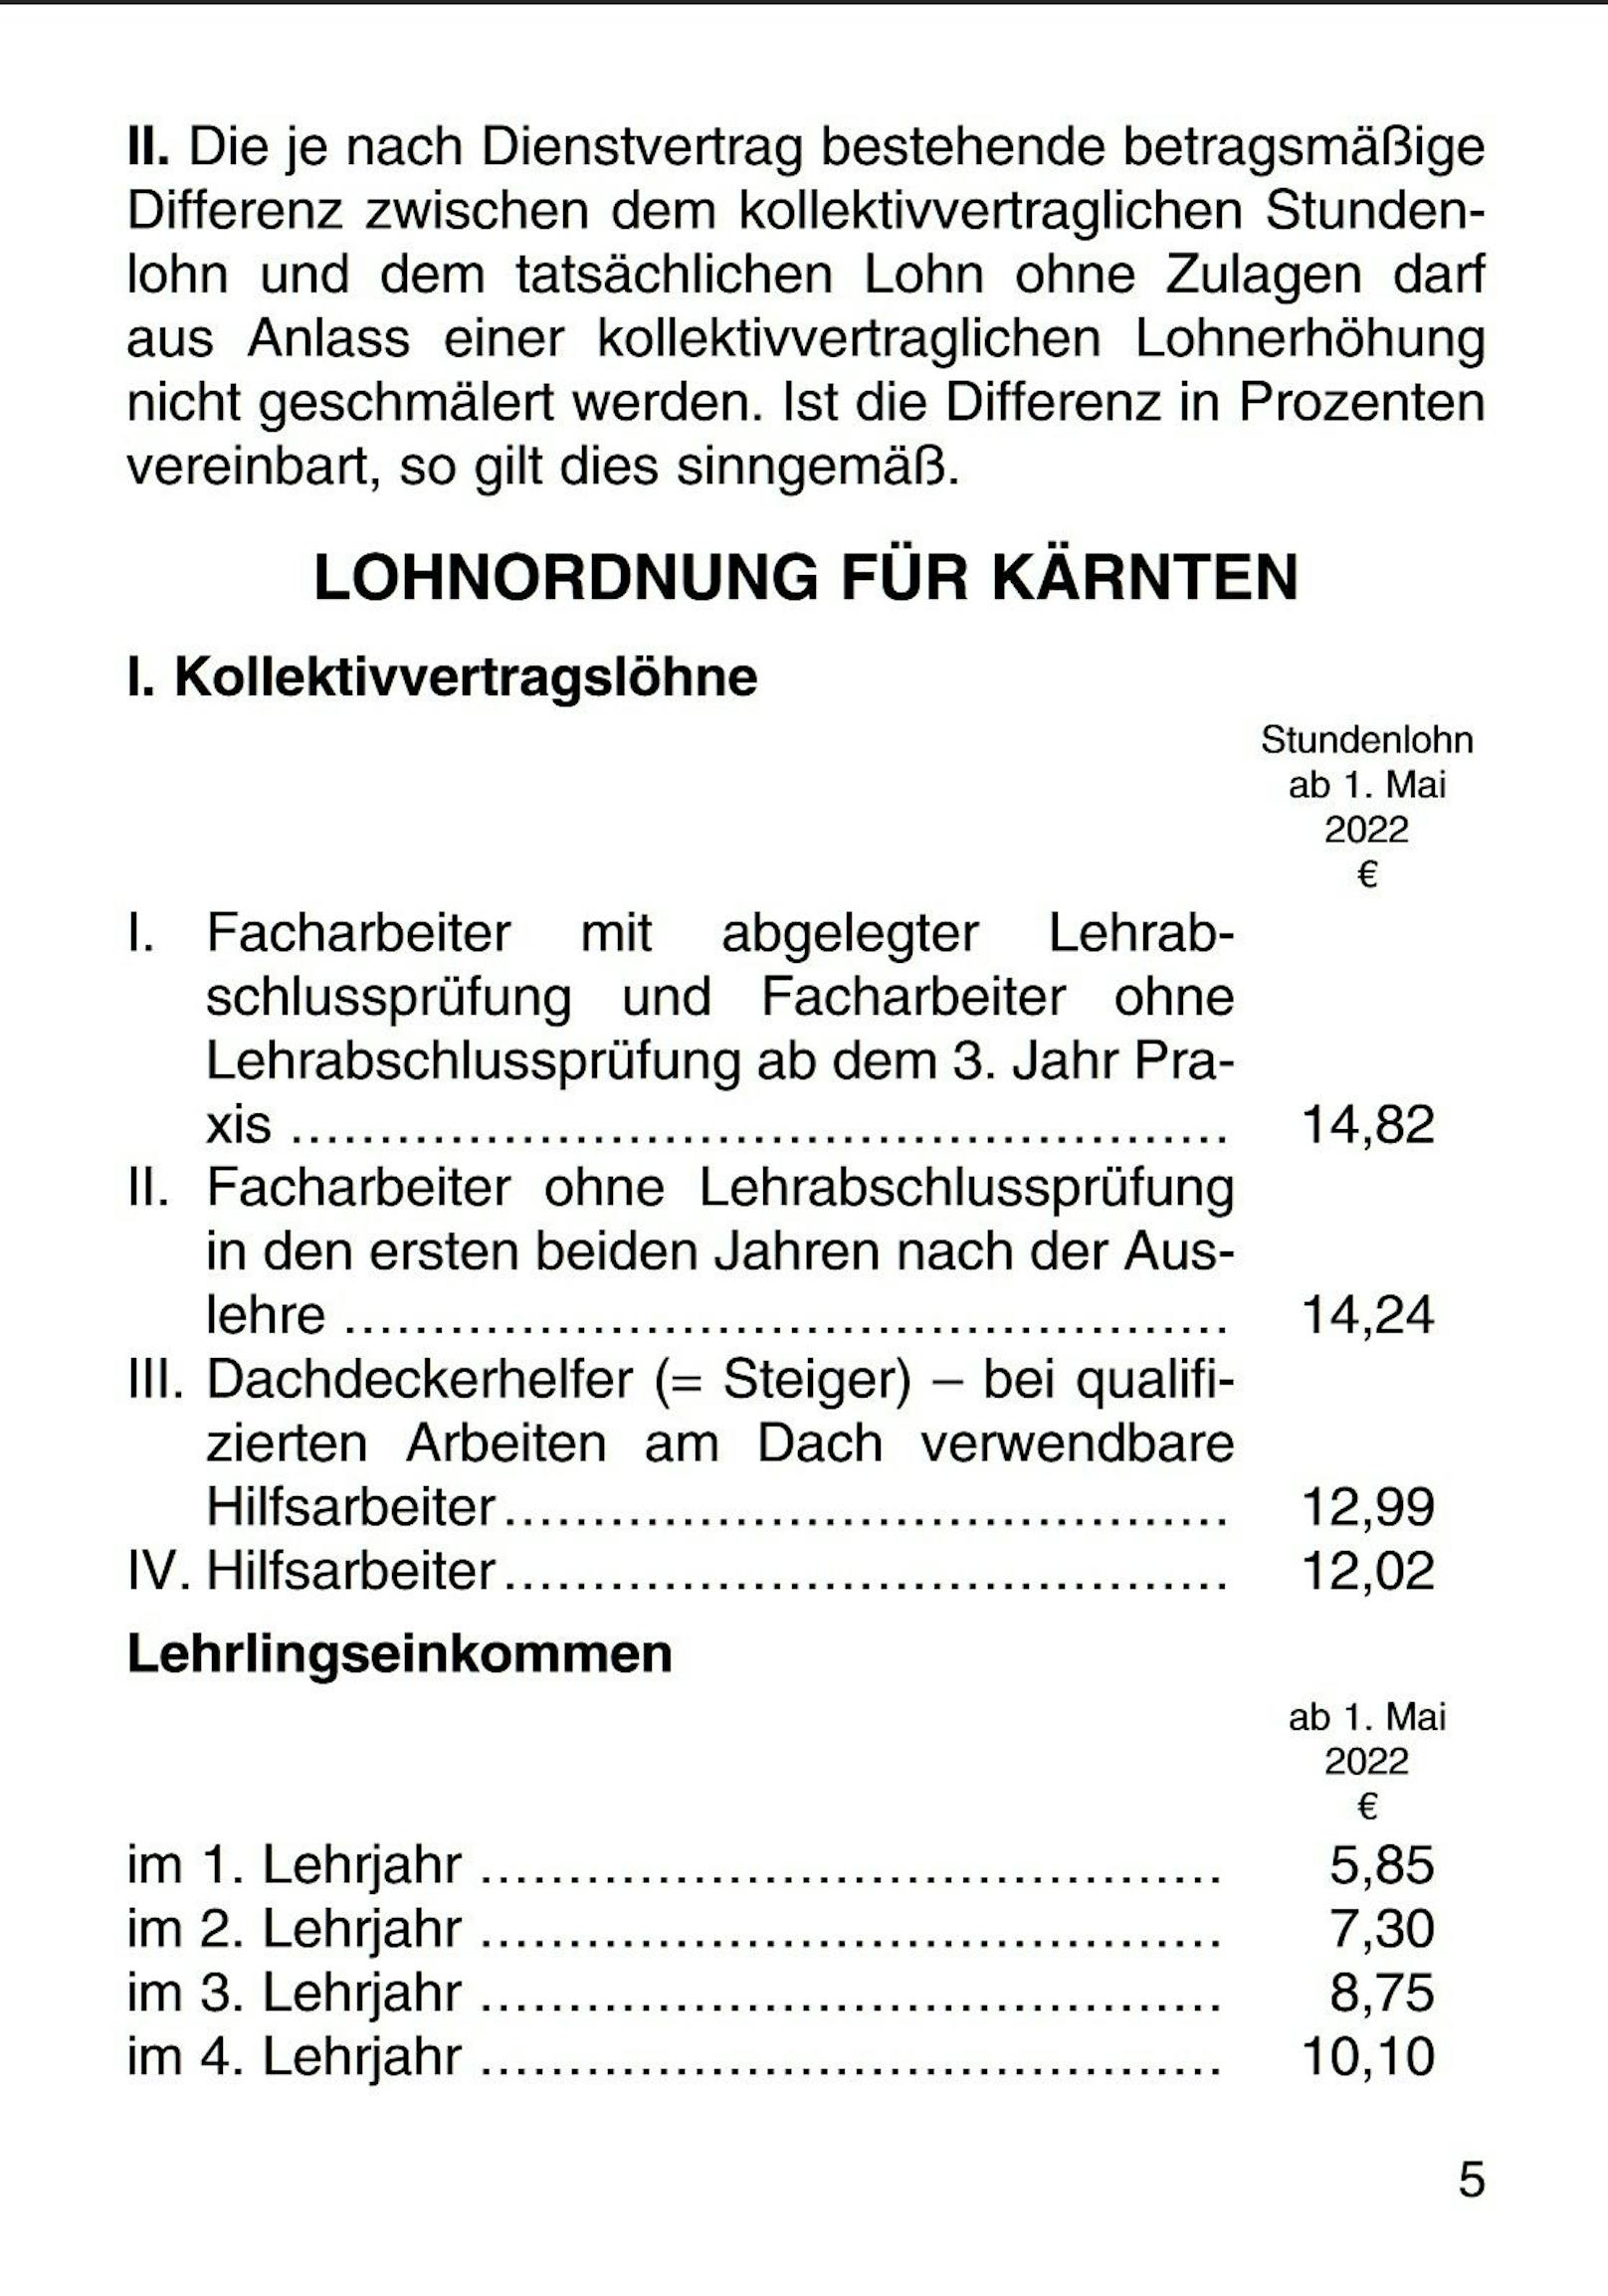 Auszug aus dem Kollektivvertrag - selbst in Kärnten gibt es über 12 Euro für Hilfskräfte.